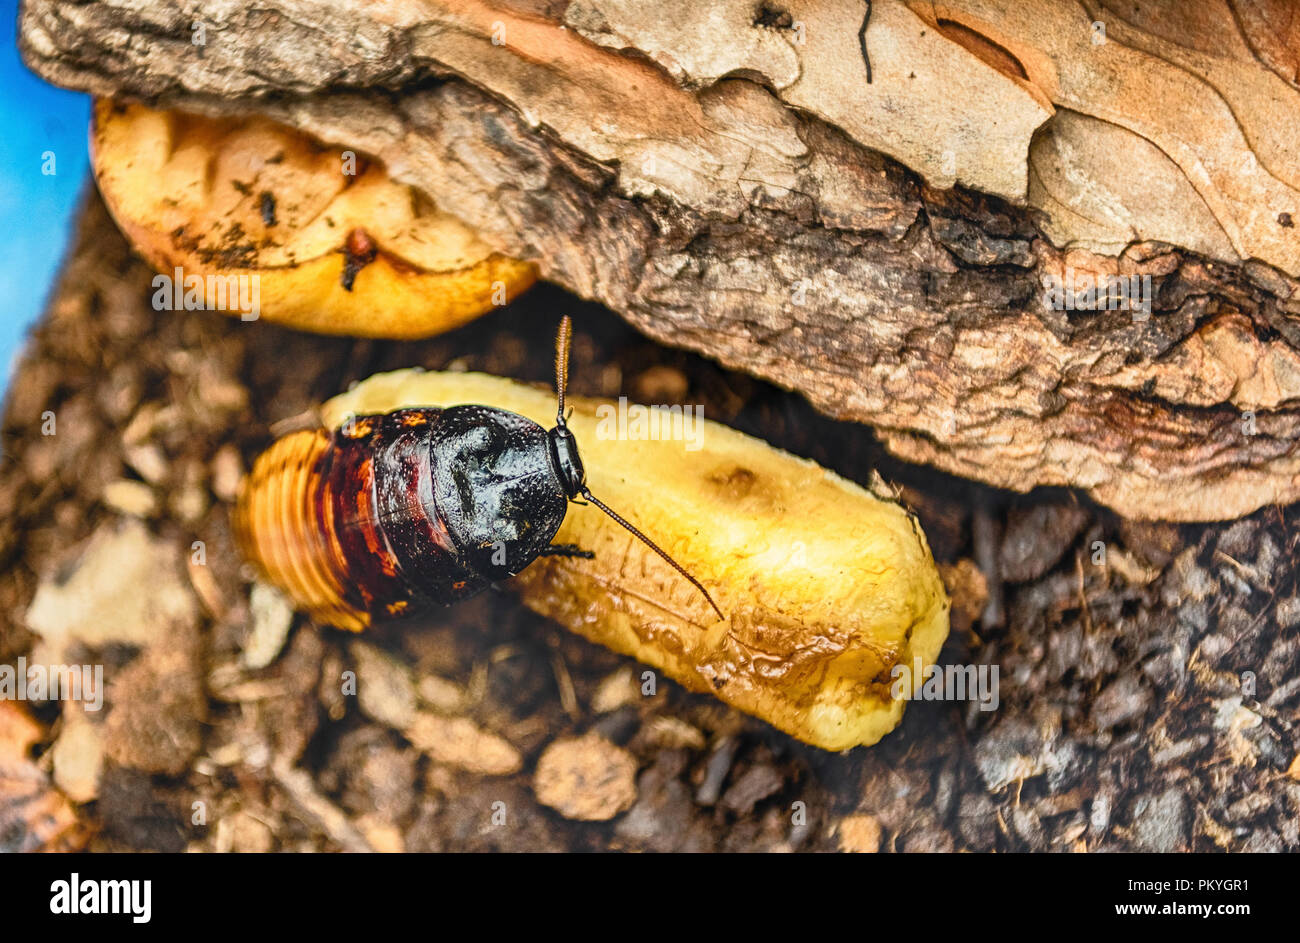 Madagascar scarafaggio sibilante aka Gromphadorina Portentosa mentre mangia una banana. Si tratta di uno dei più grandi specie di scarafaggi Foto Stock